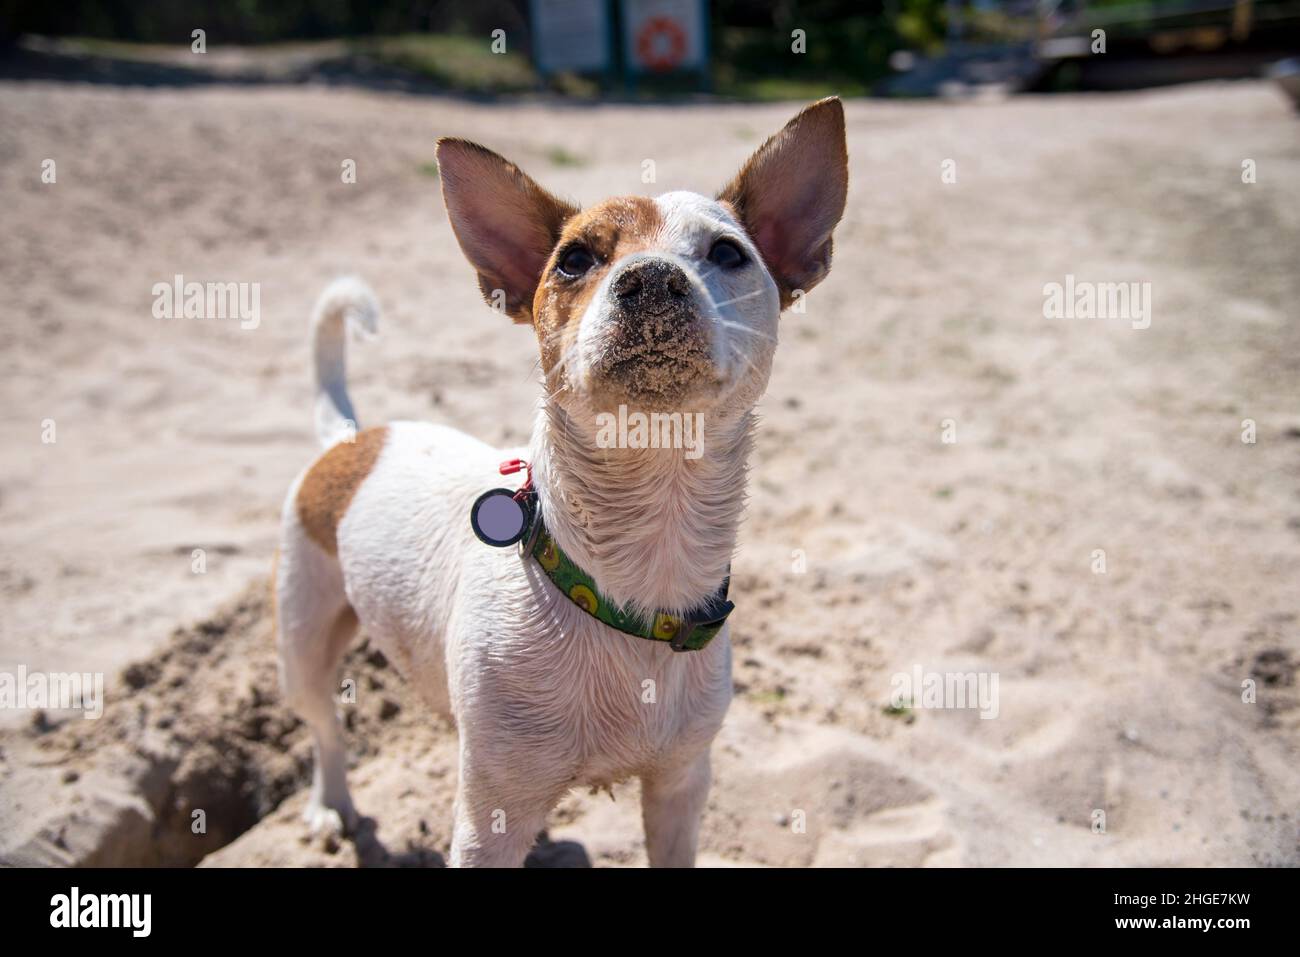 Un cane della razza Jack Russell Terrier si erge proprio sulla spiaggia sulla sabbia in un collare verde con un modello avocado, guarda verso l'alto contro il backgrou Foto Stock